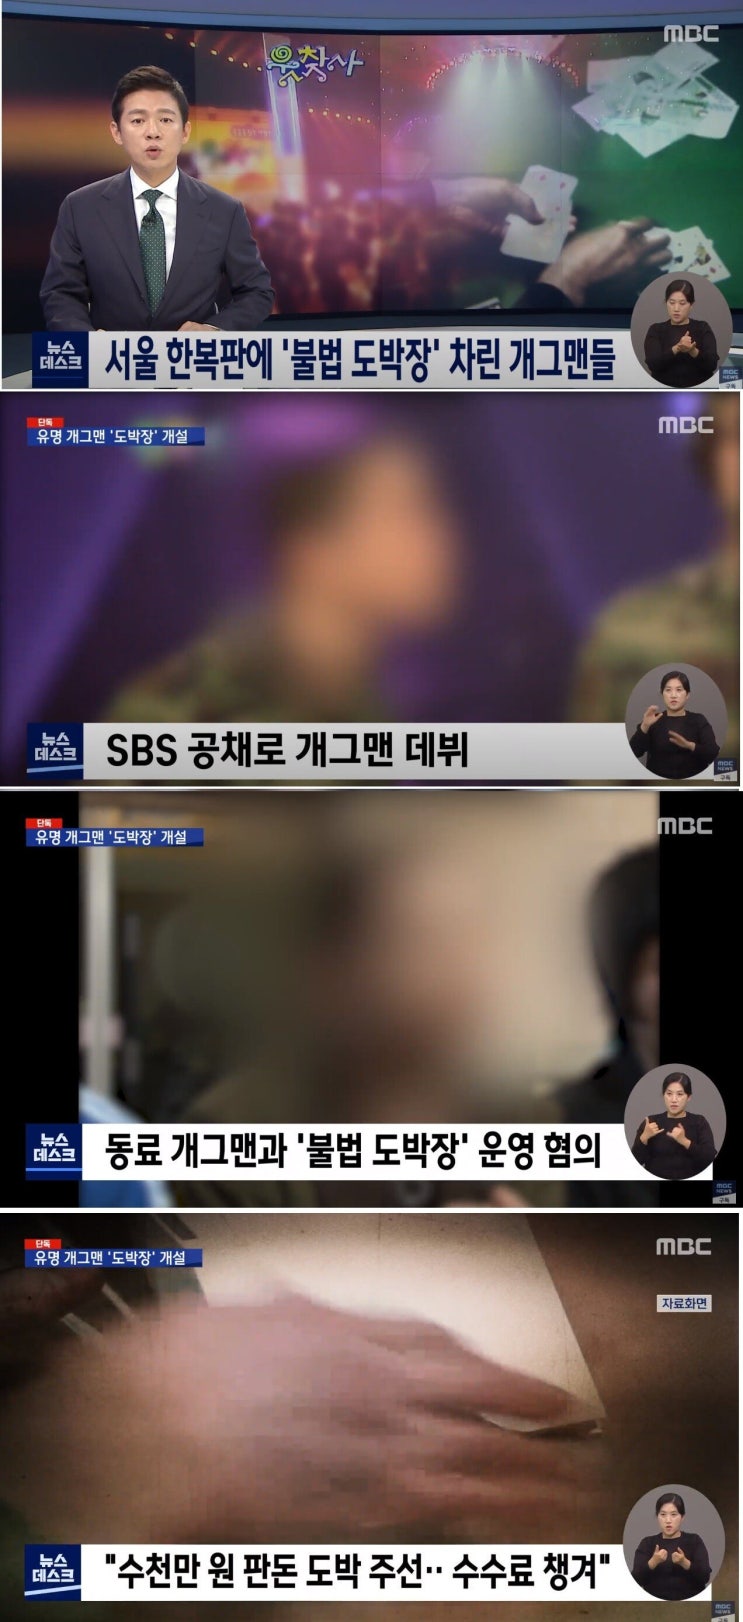 불법도박장 차렸다 잡힌 SBS 공채출신 유명 개그맨 김씨는 누구?